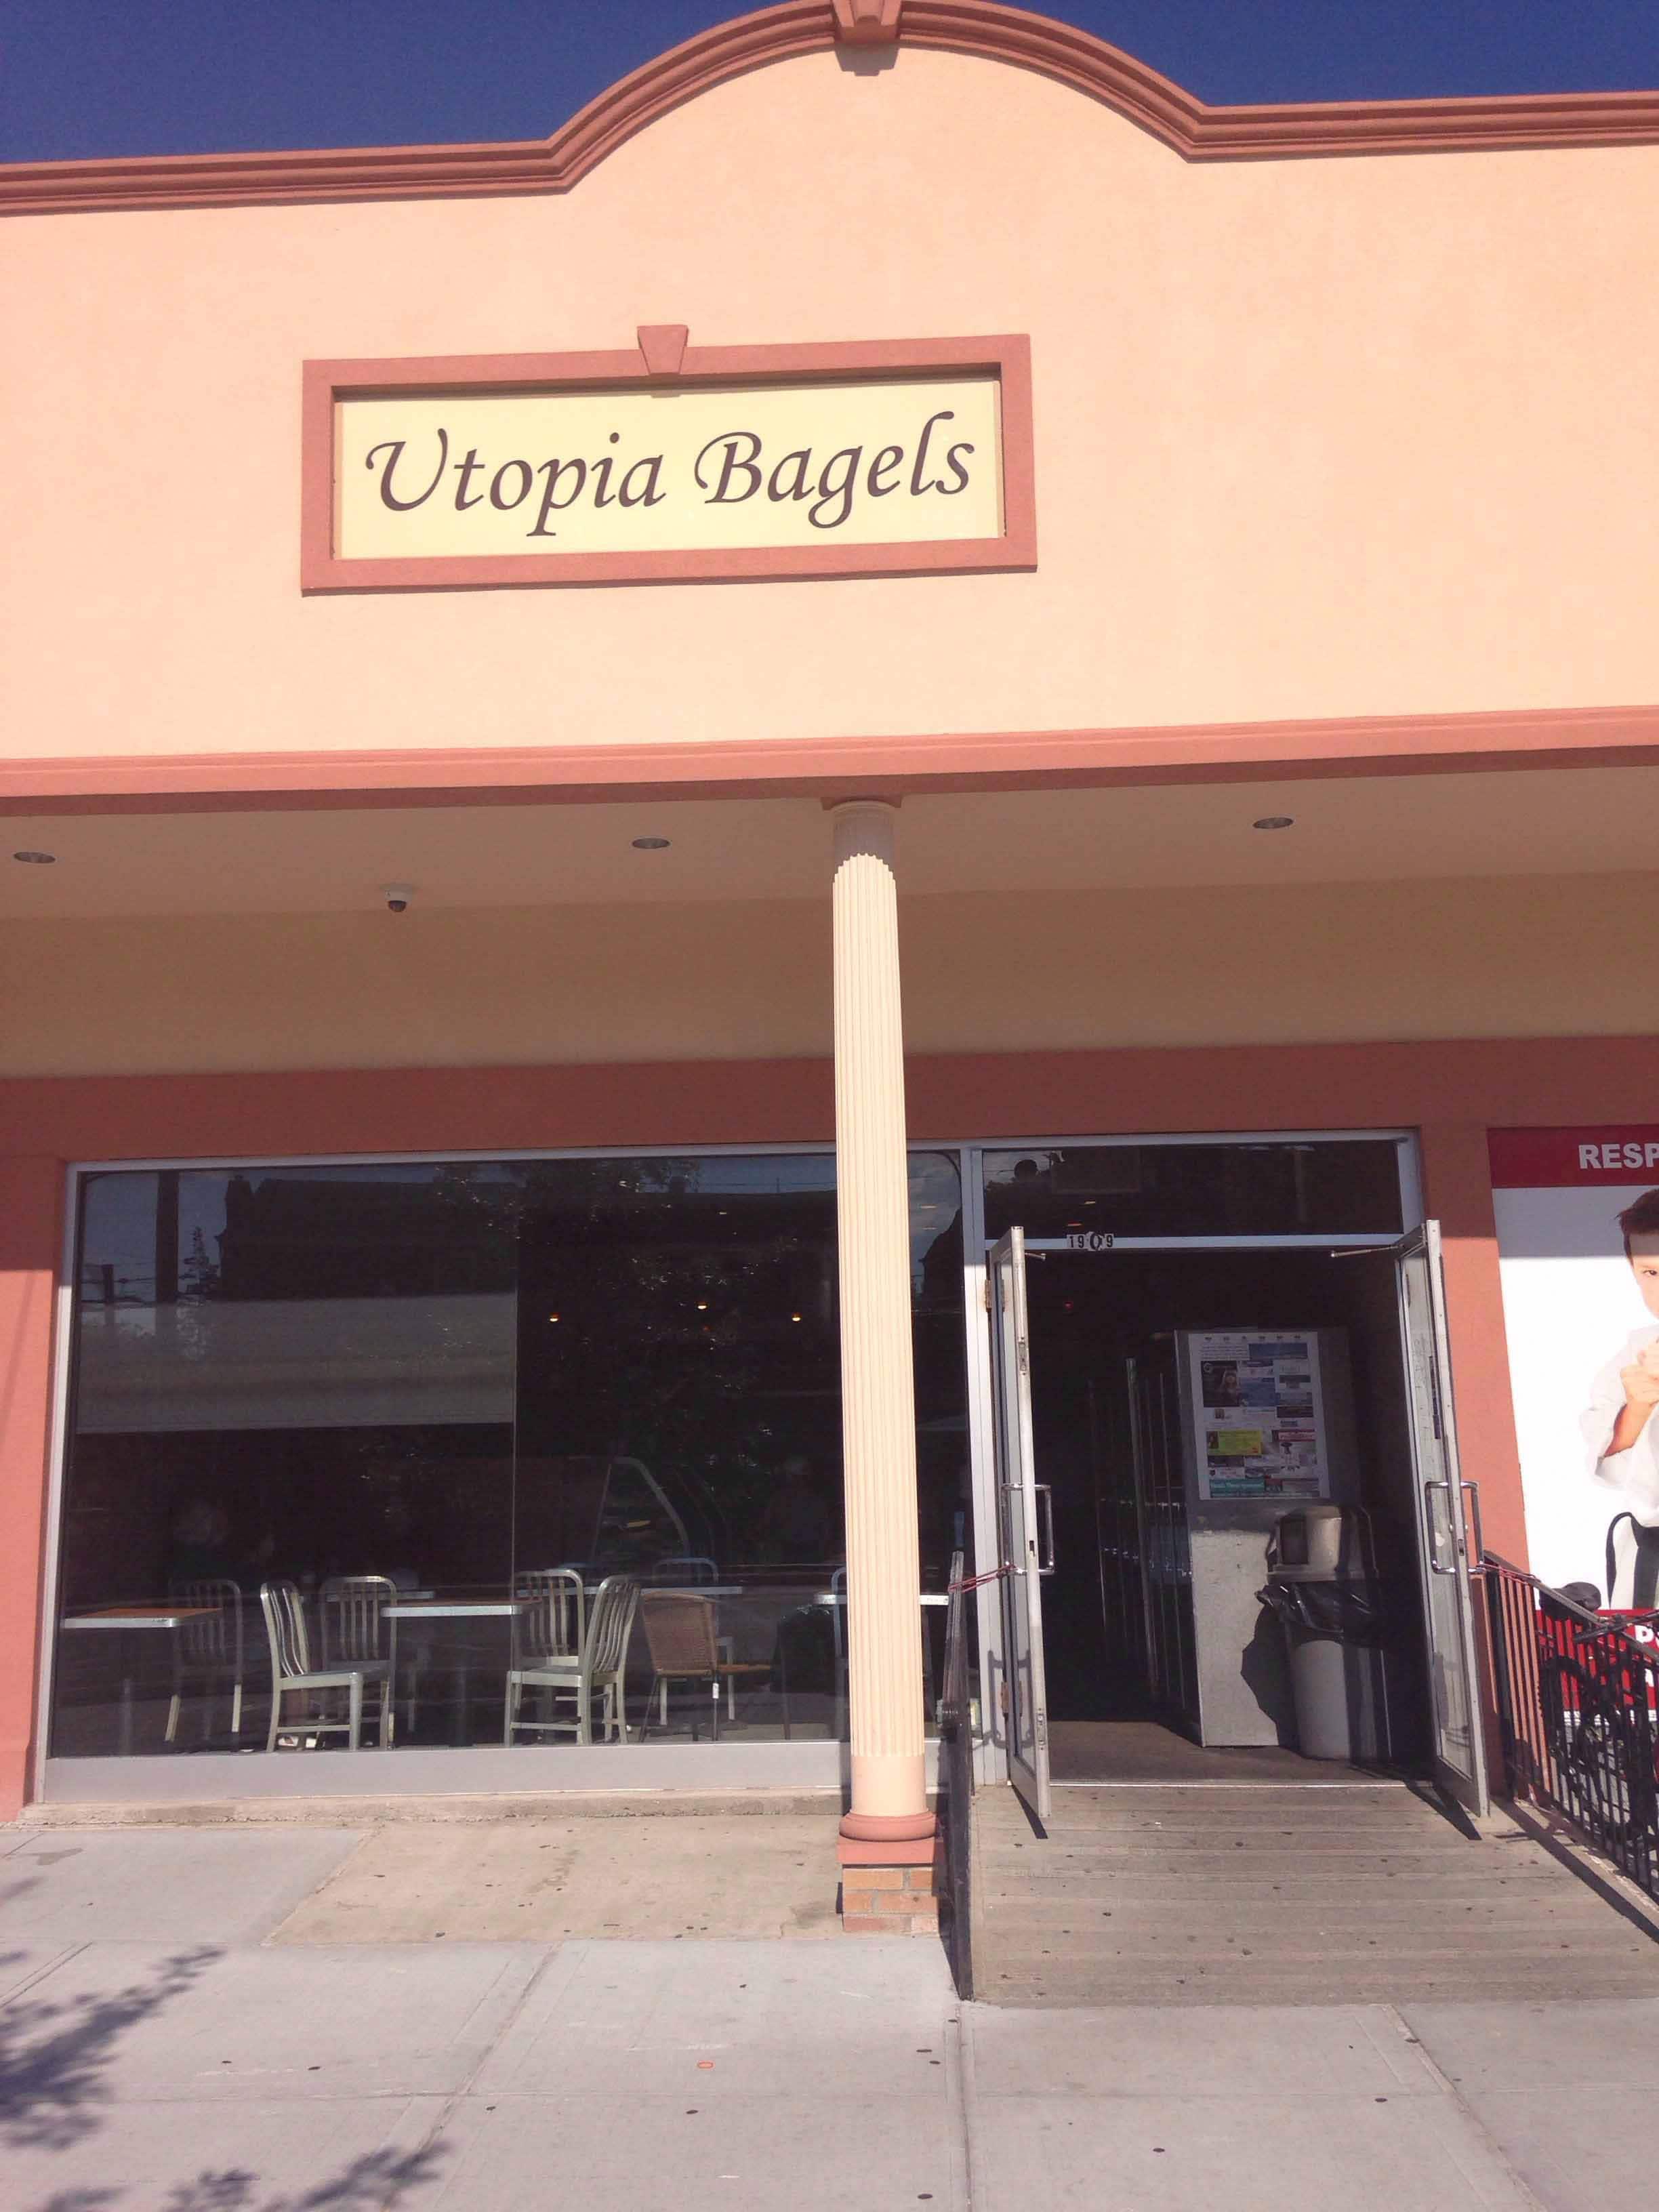 buy utopia bagels